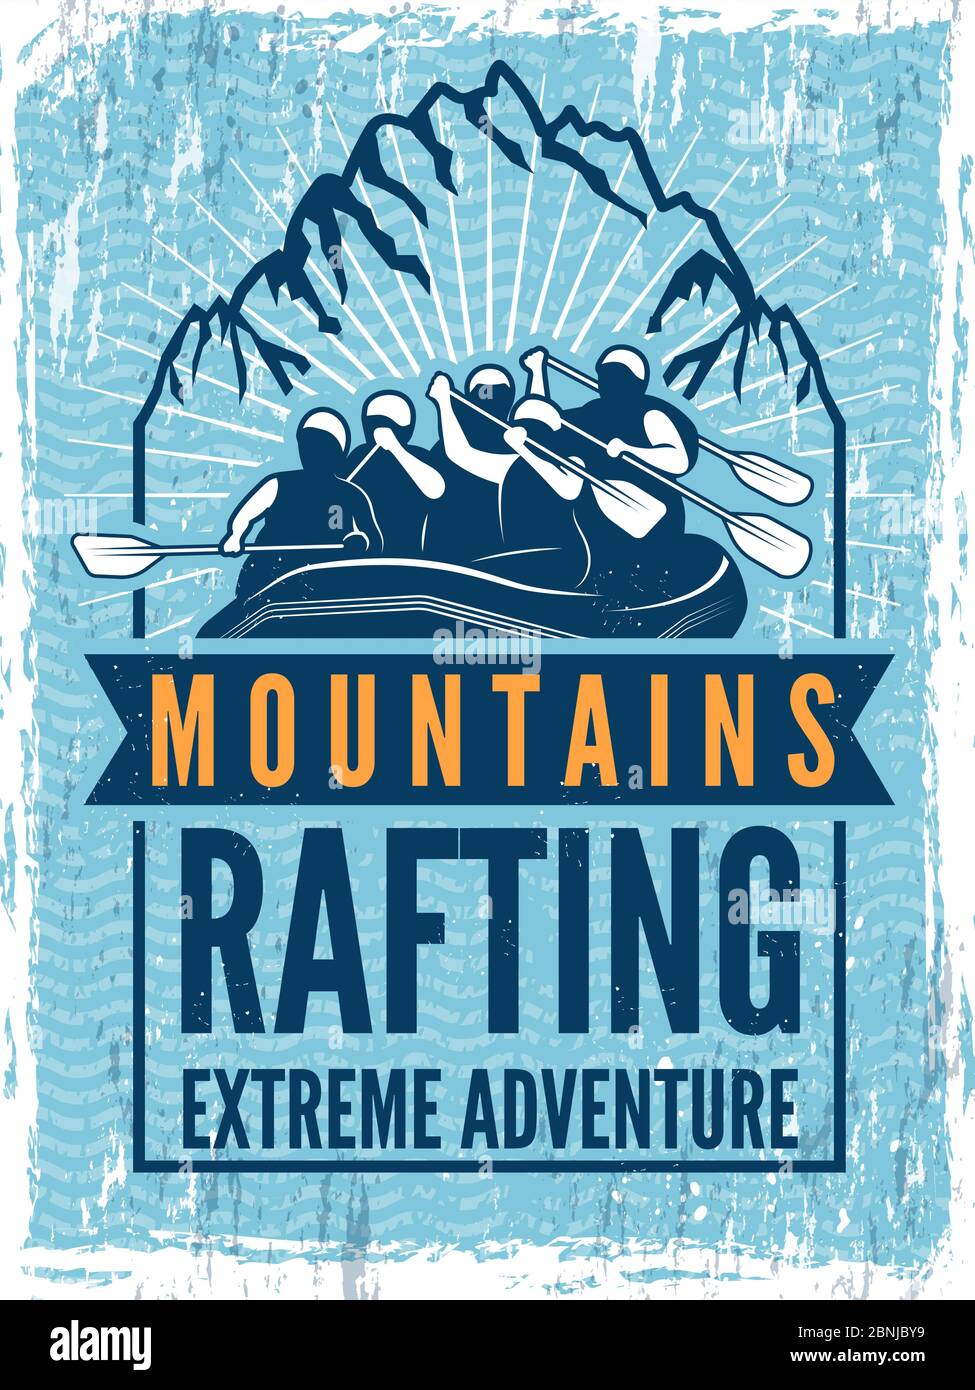 Poster für Extremsportverein. Monochrome Illustration von Rafting. Kanu oder Kajak auf dem Meer Stock Vektor